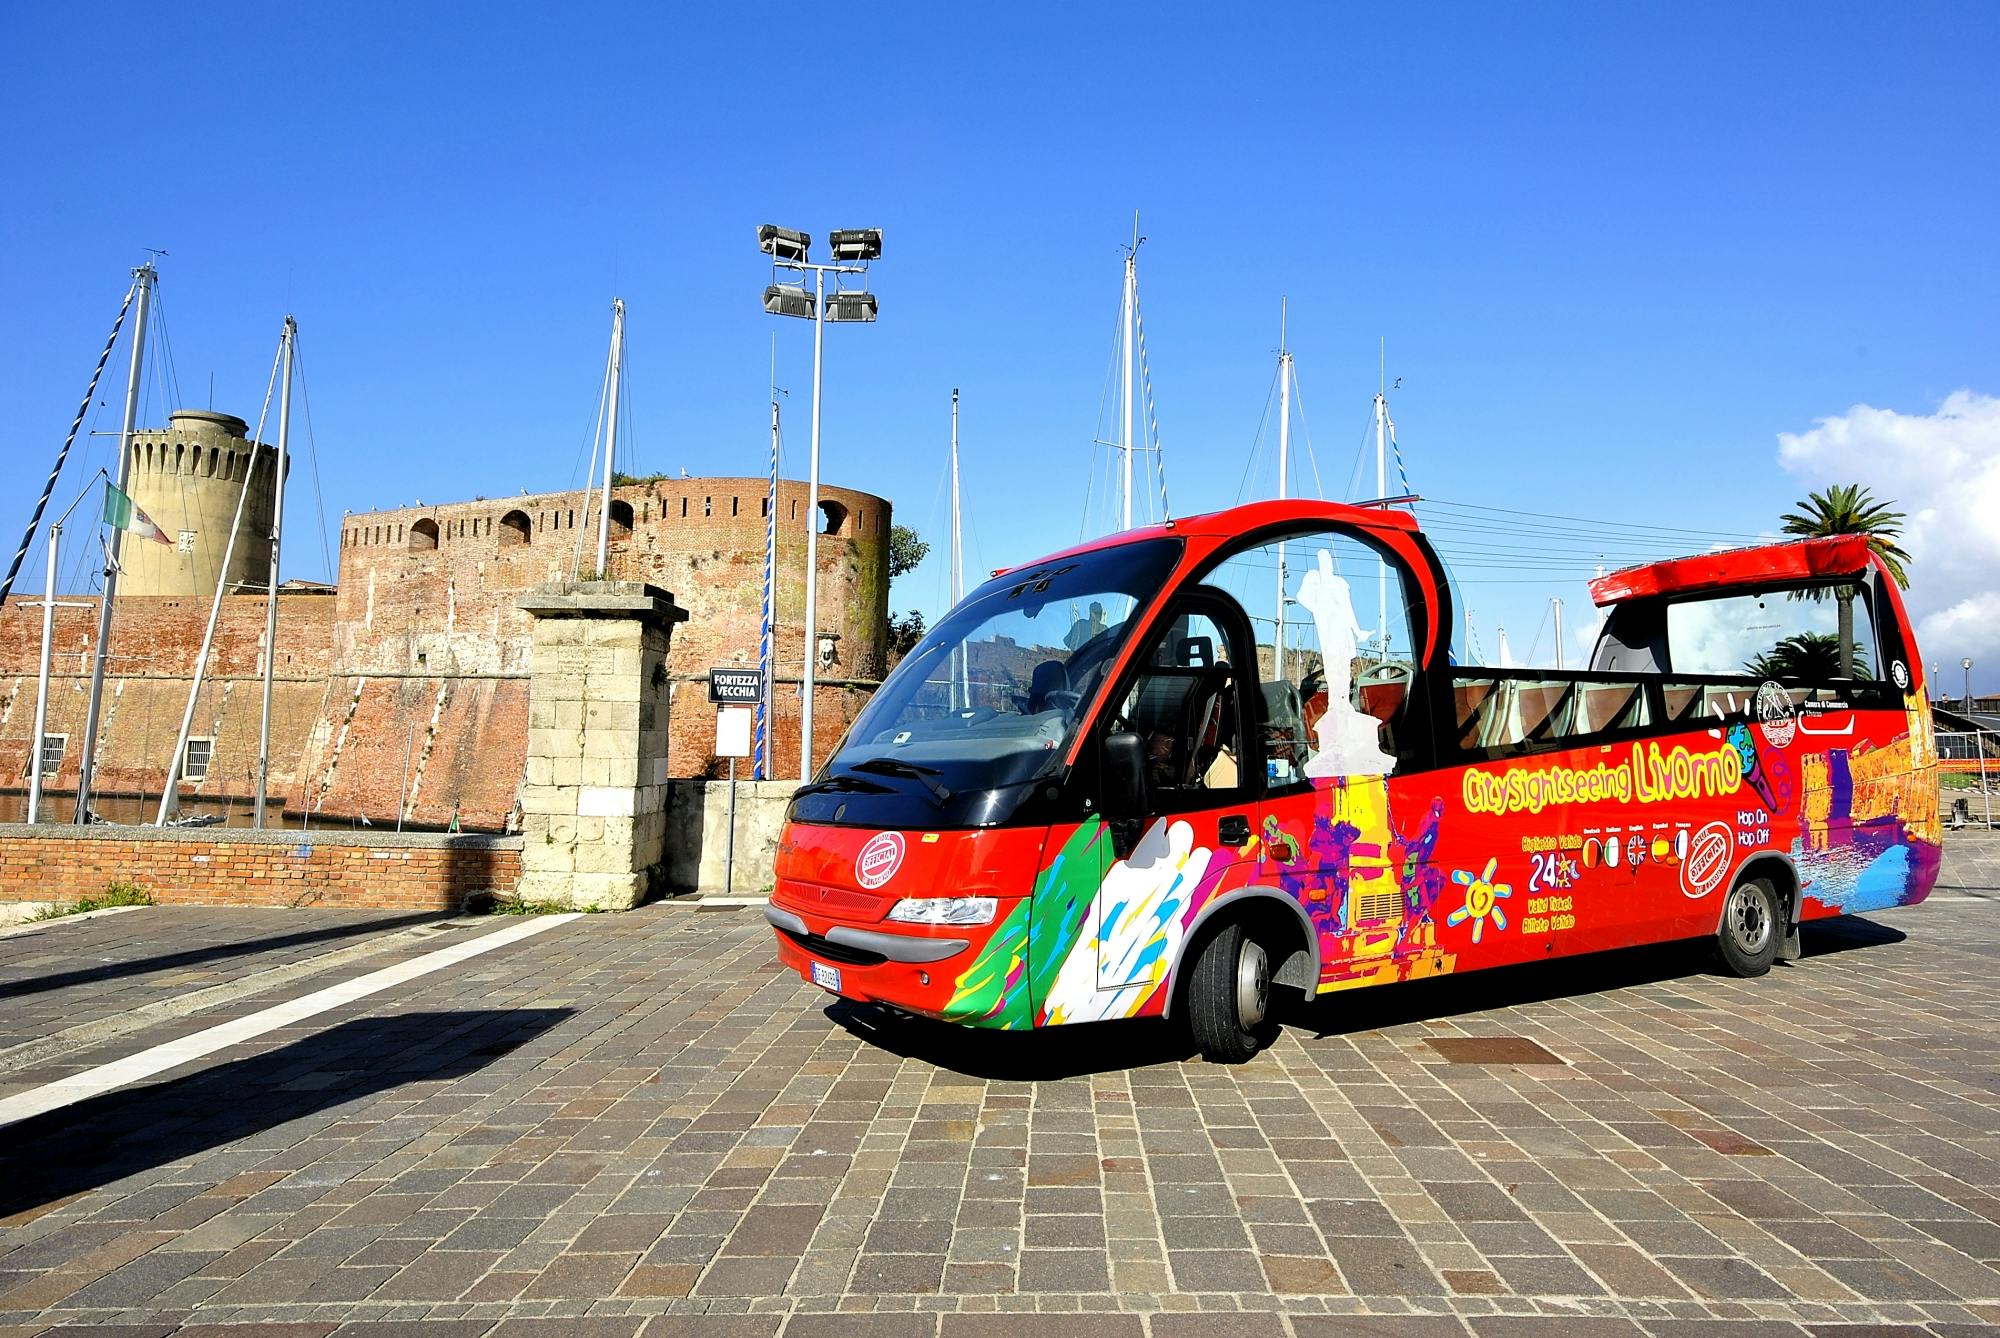 Billetes de 24 horas para bus turístico de Livorno